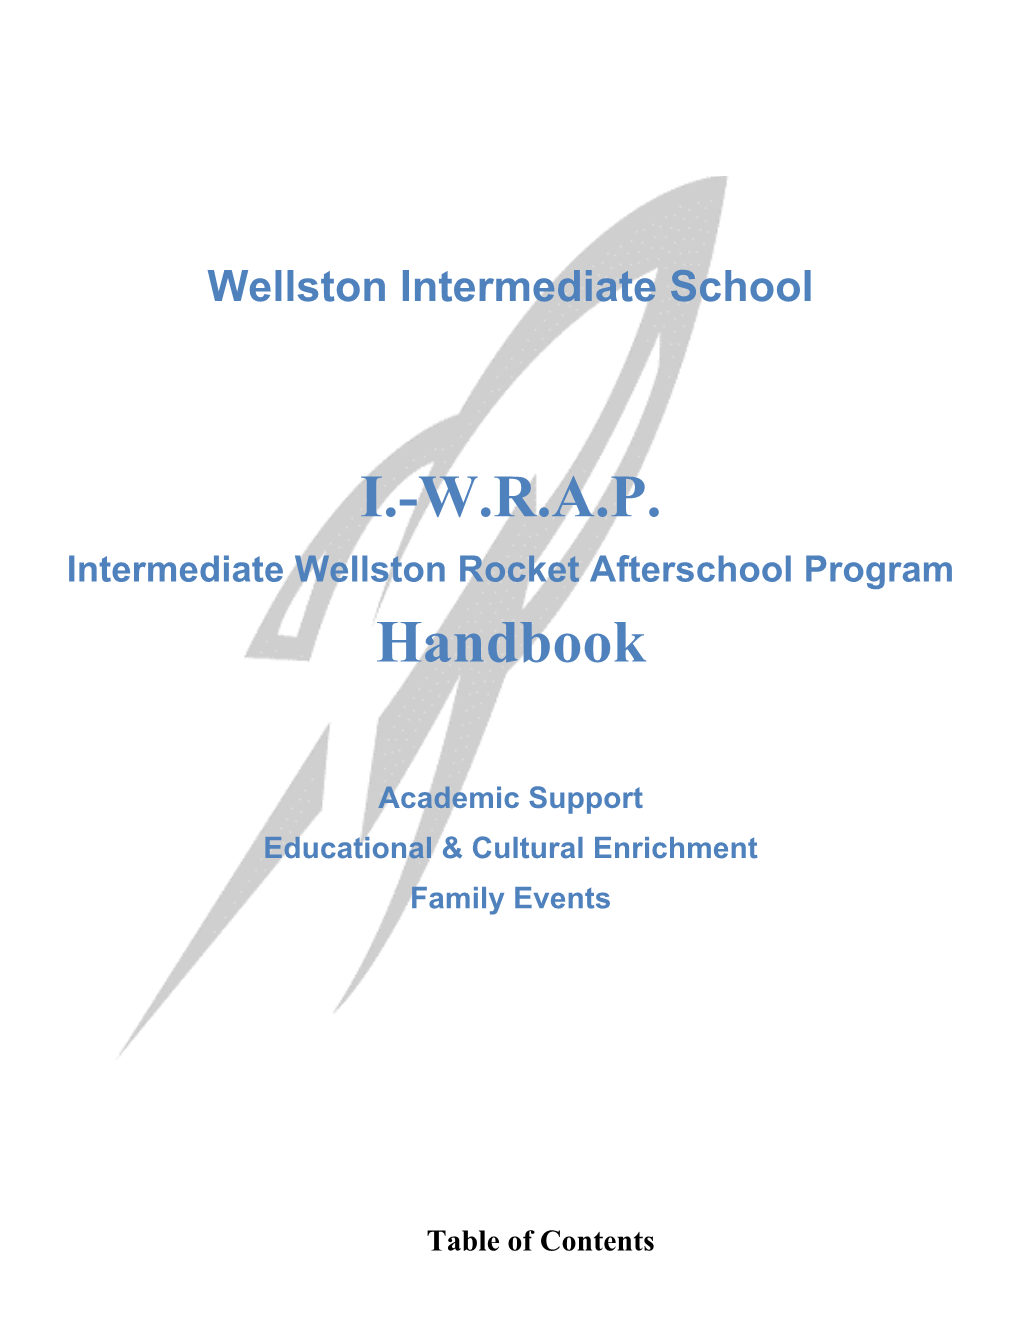 Intermediate Wellston Rocket Afterschool Program